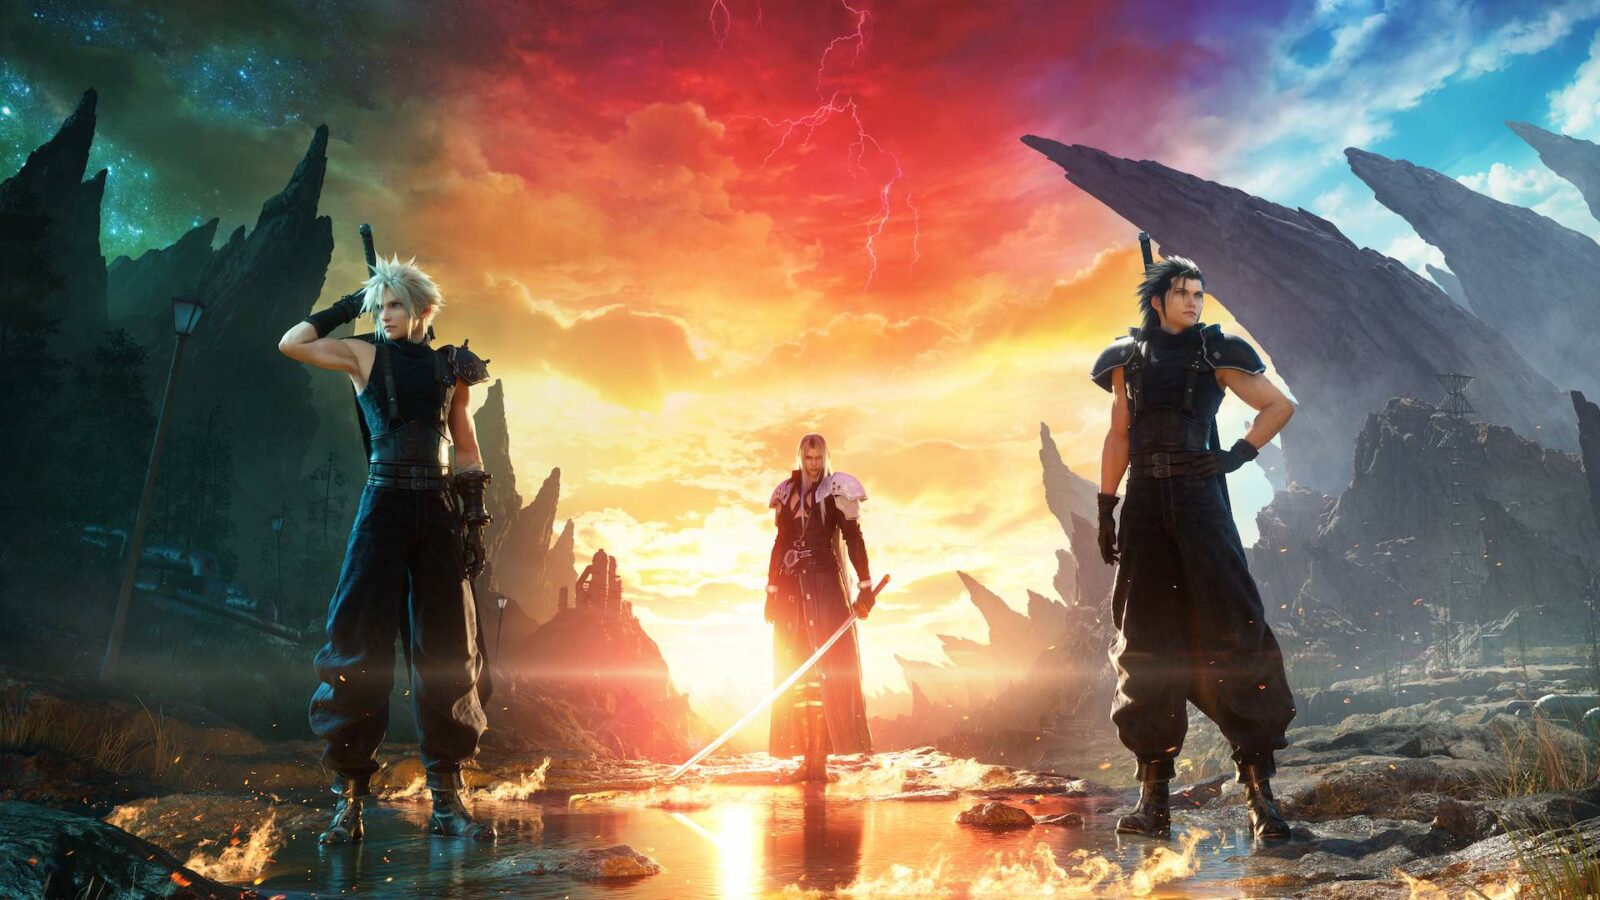 10 belangrijke dingen die je wilt weten over Final Fantasy